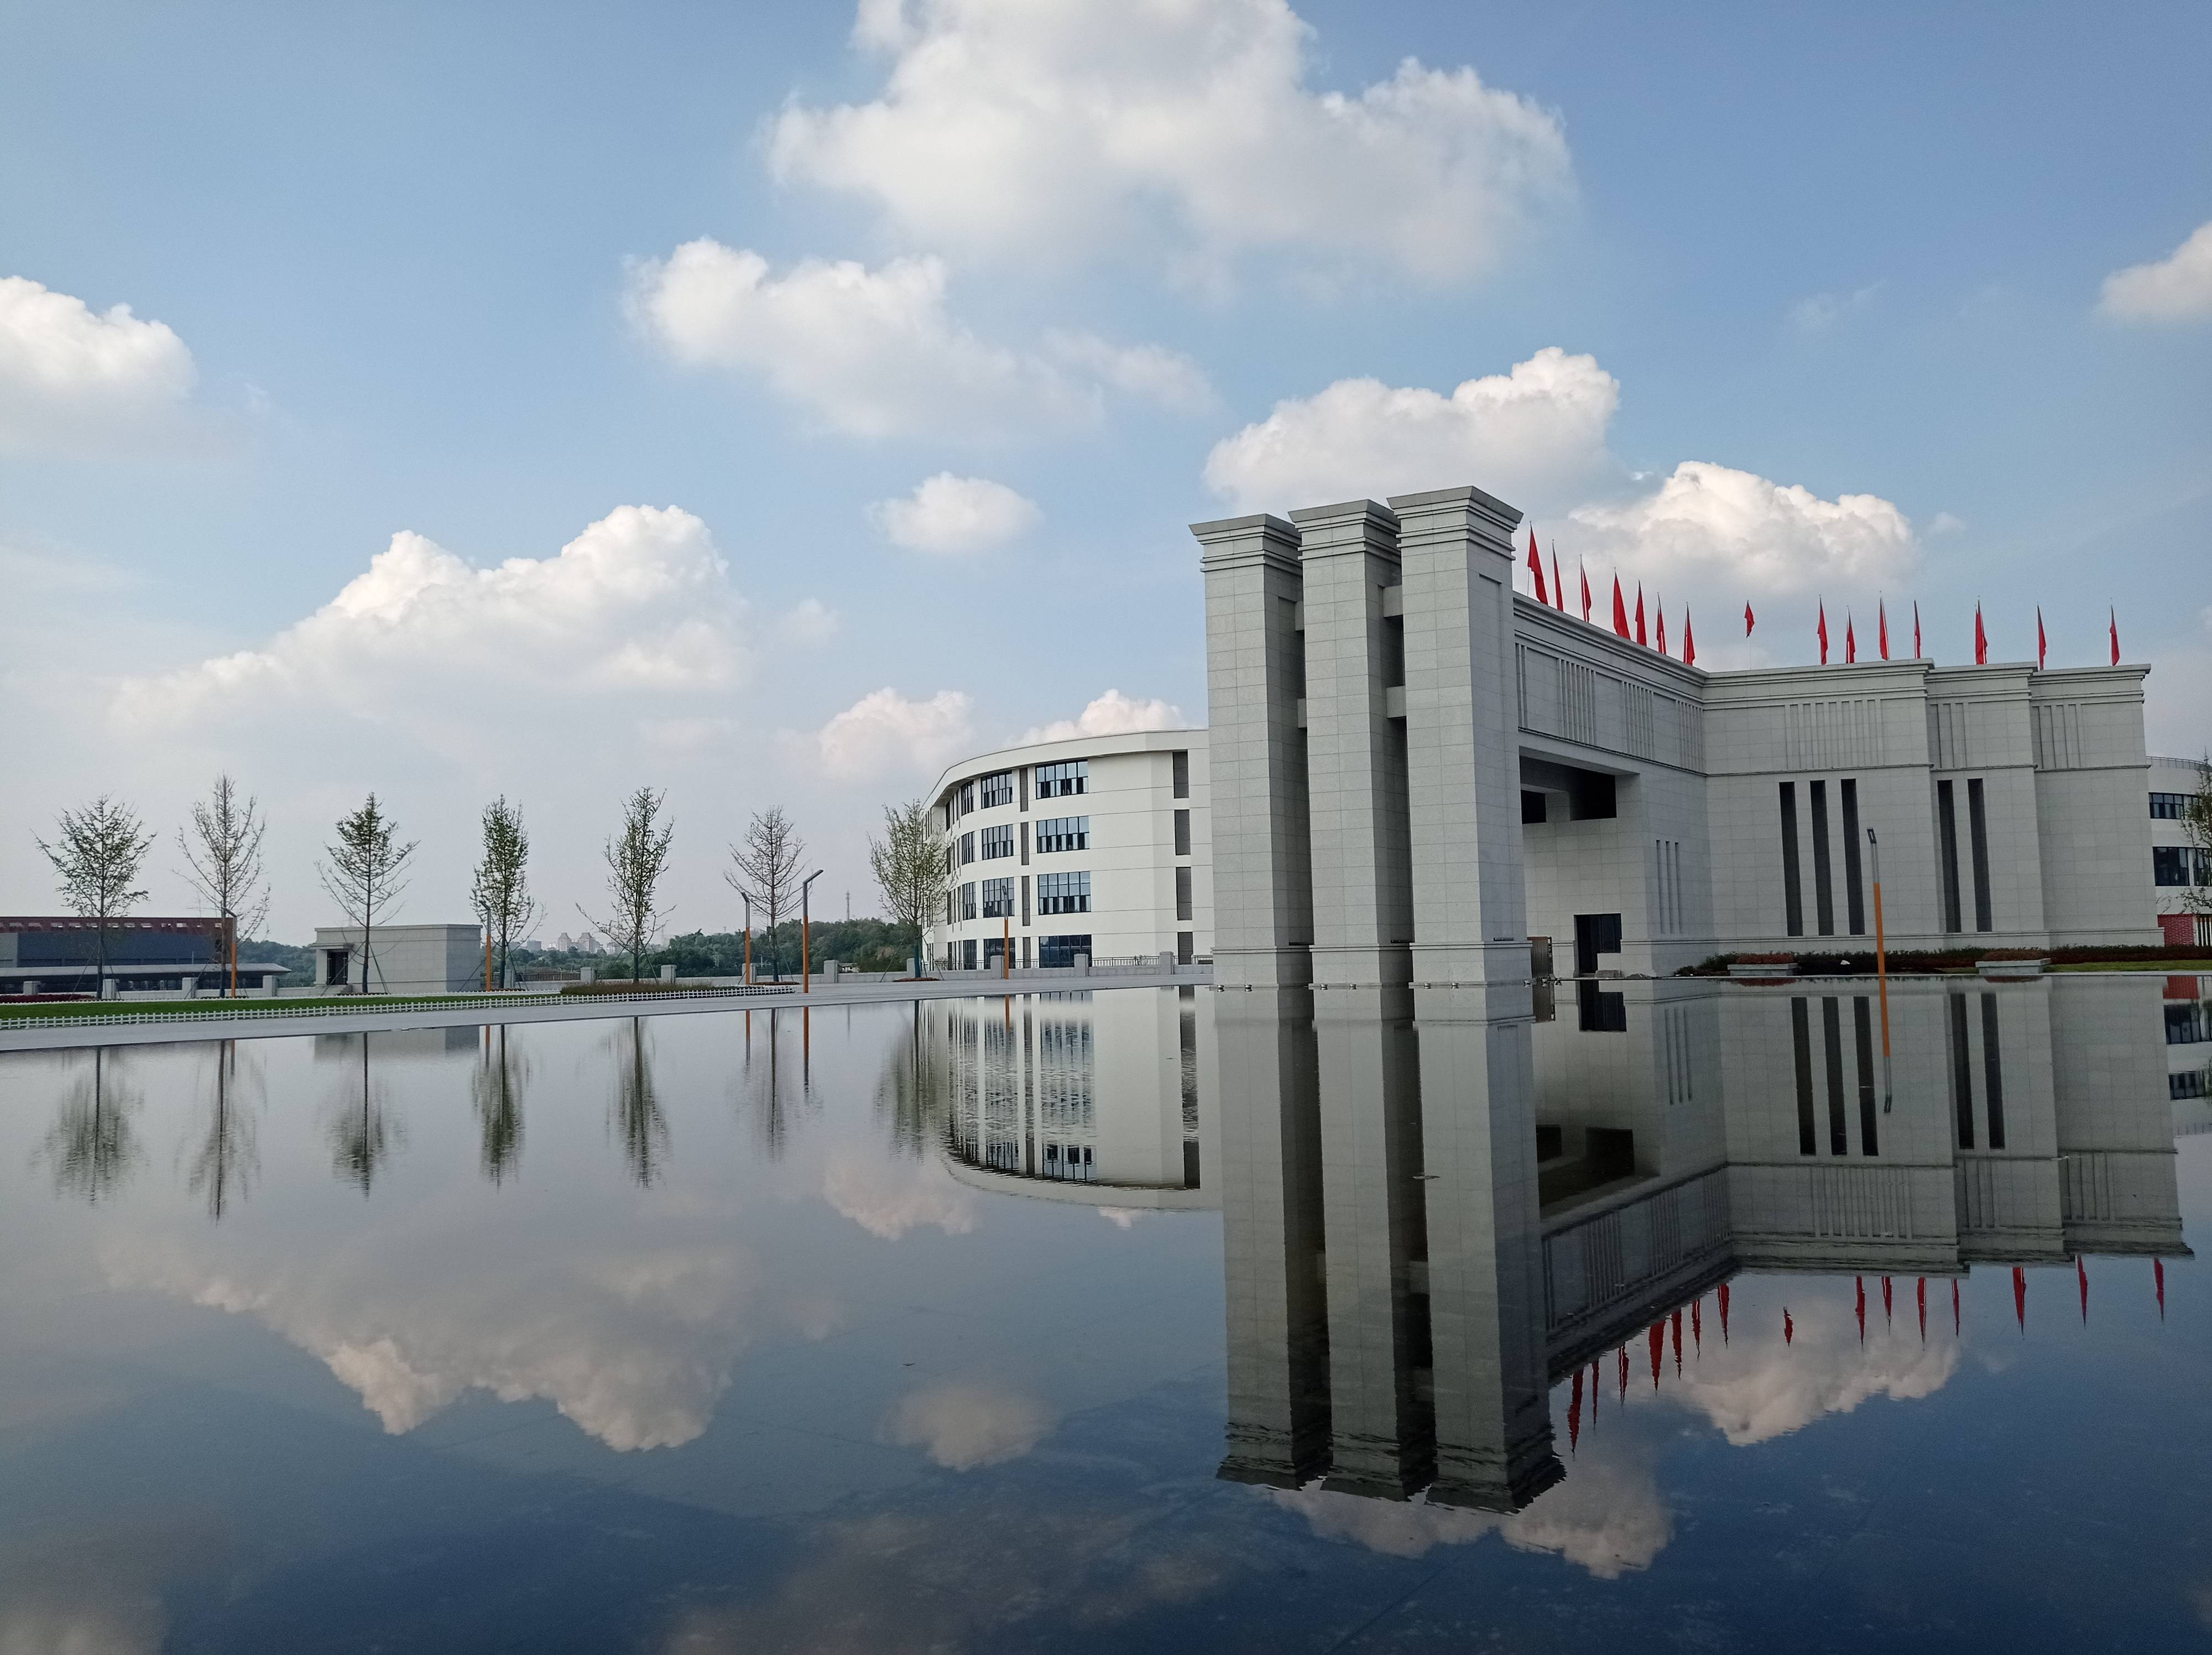 筑品质 建设三美校园模版四川化工职业技术学院新校区择址于泸州市